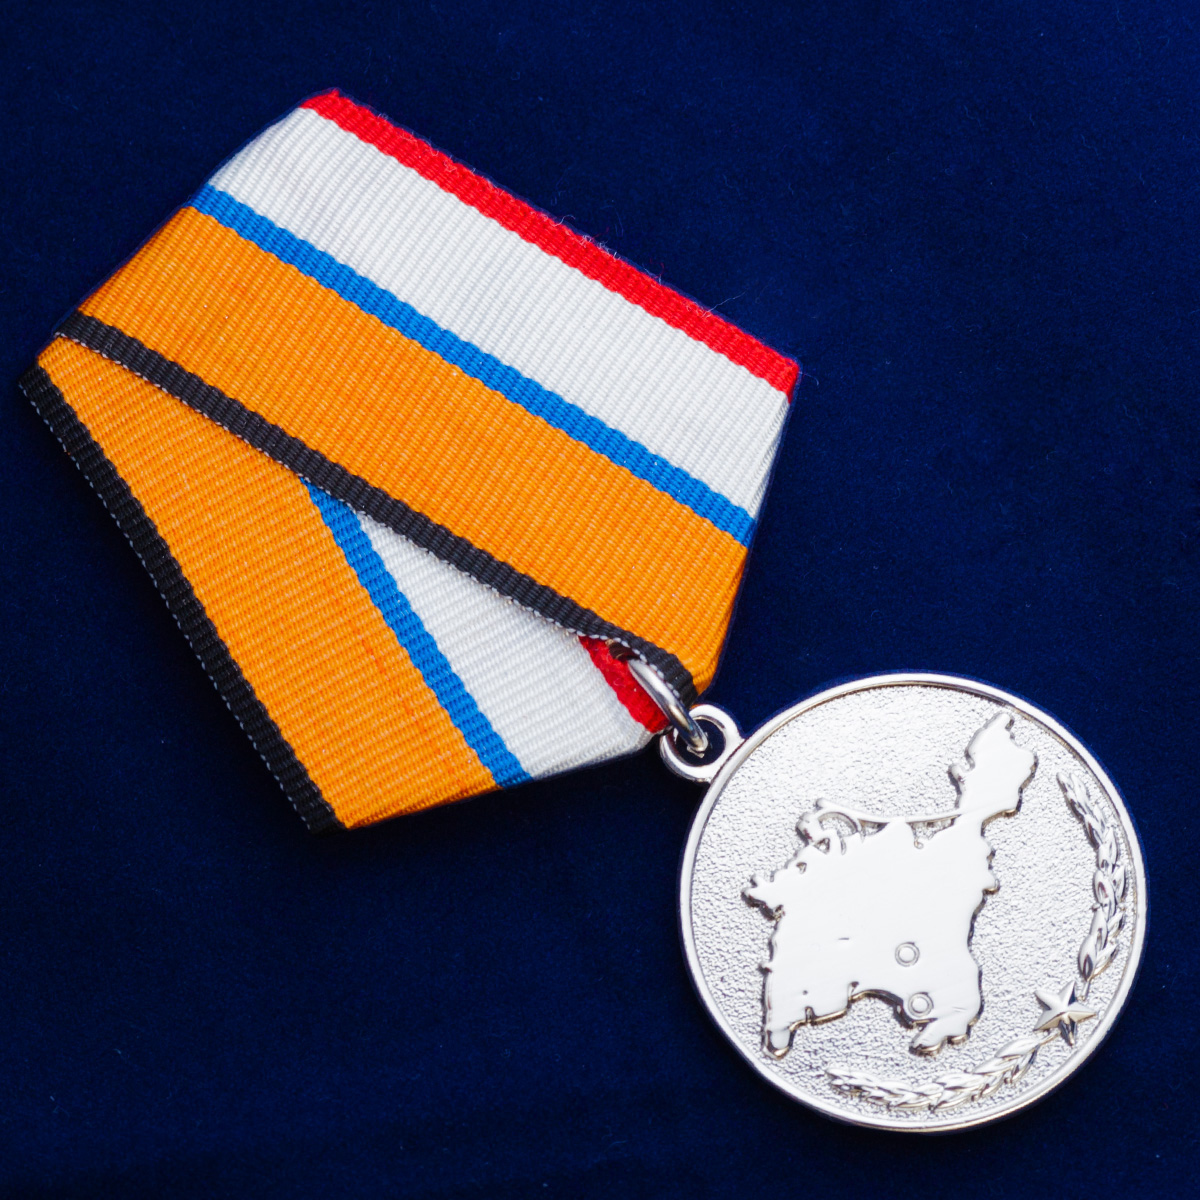 Медаль «За возвращение Крыма» 